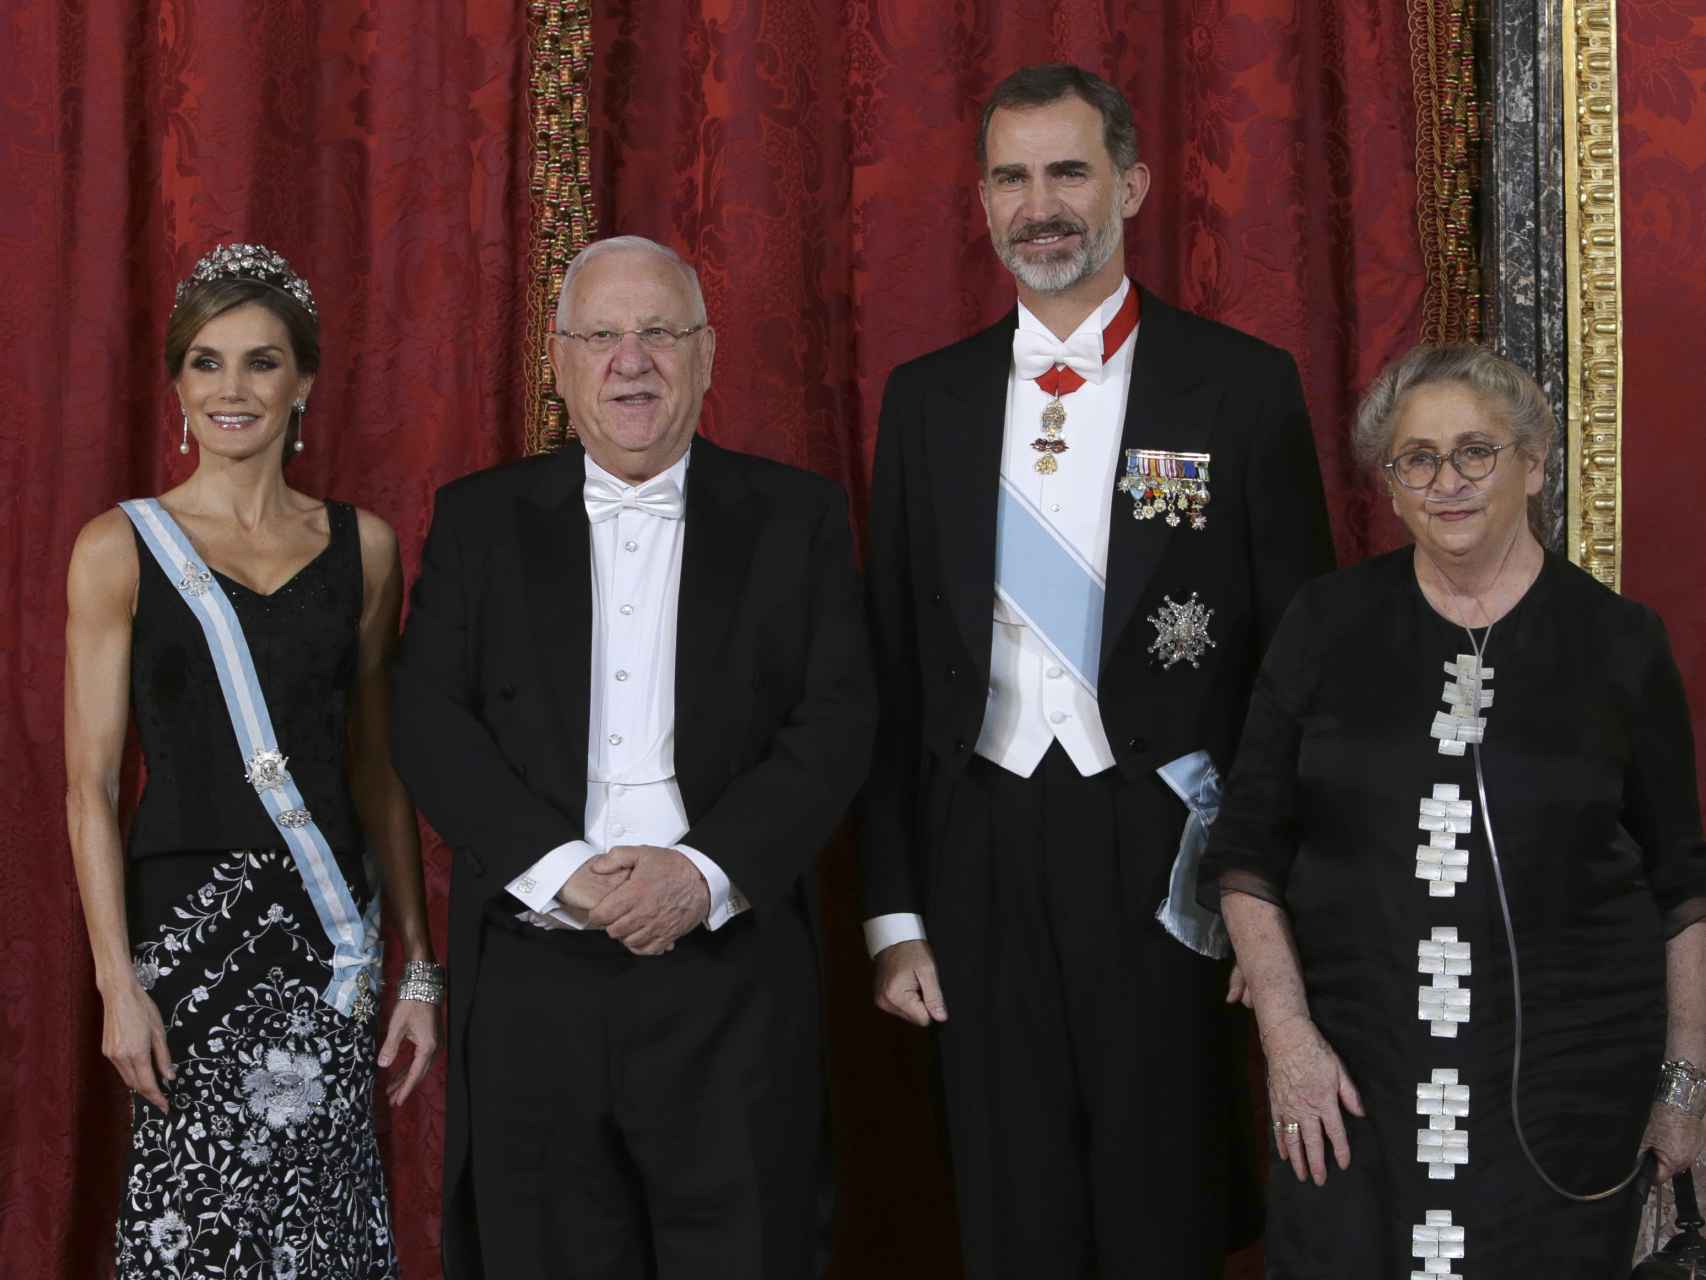 La reina Letizia junto al rey Felipe, Reuvén Rivlin y su fallecida esposa, Nechama, llevando el corsé que le hizo daño.